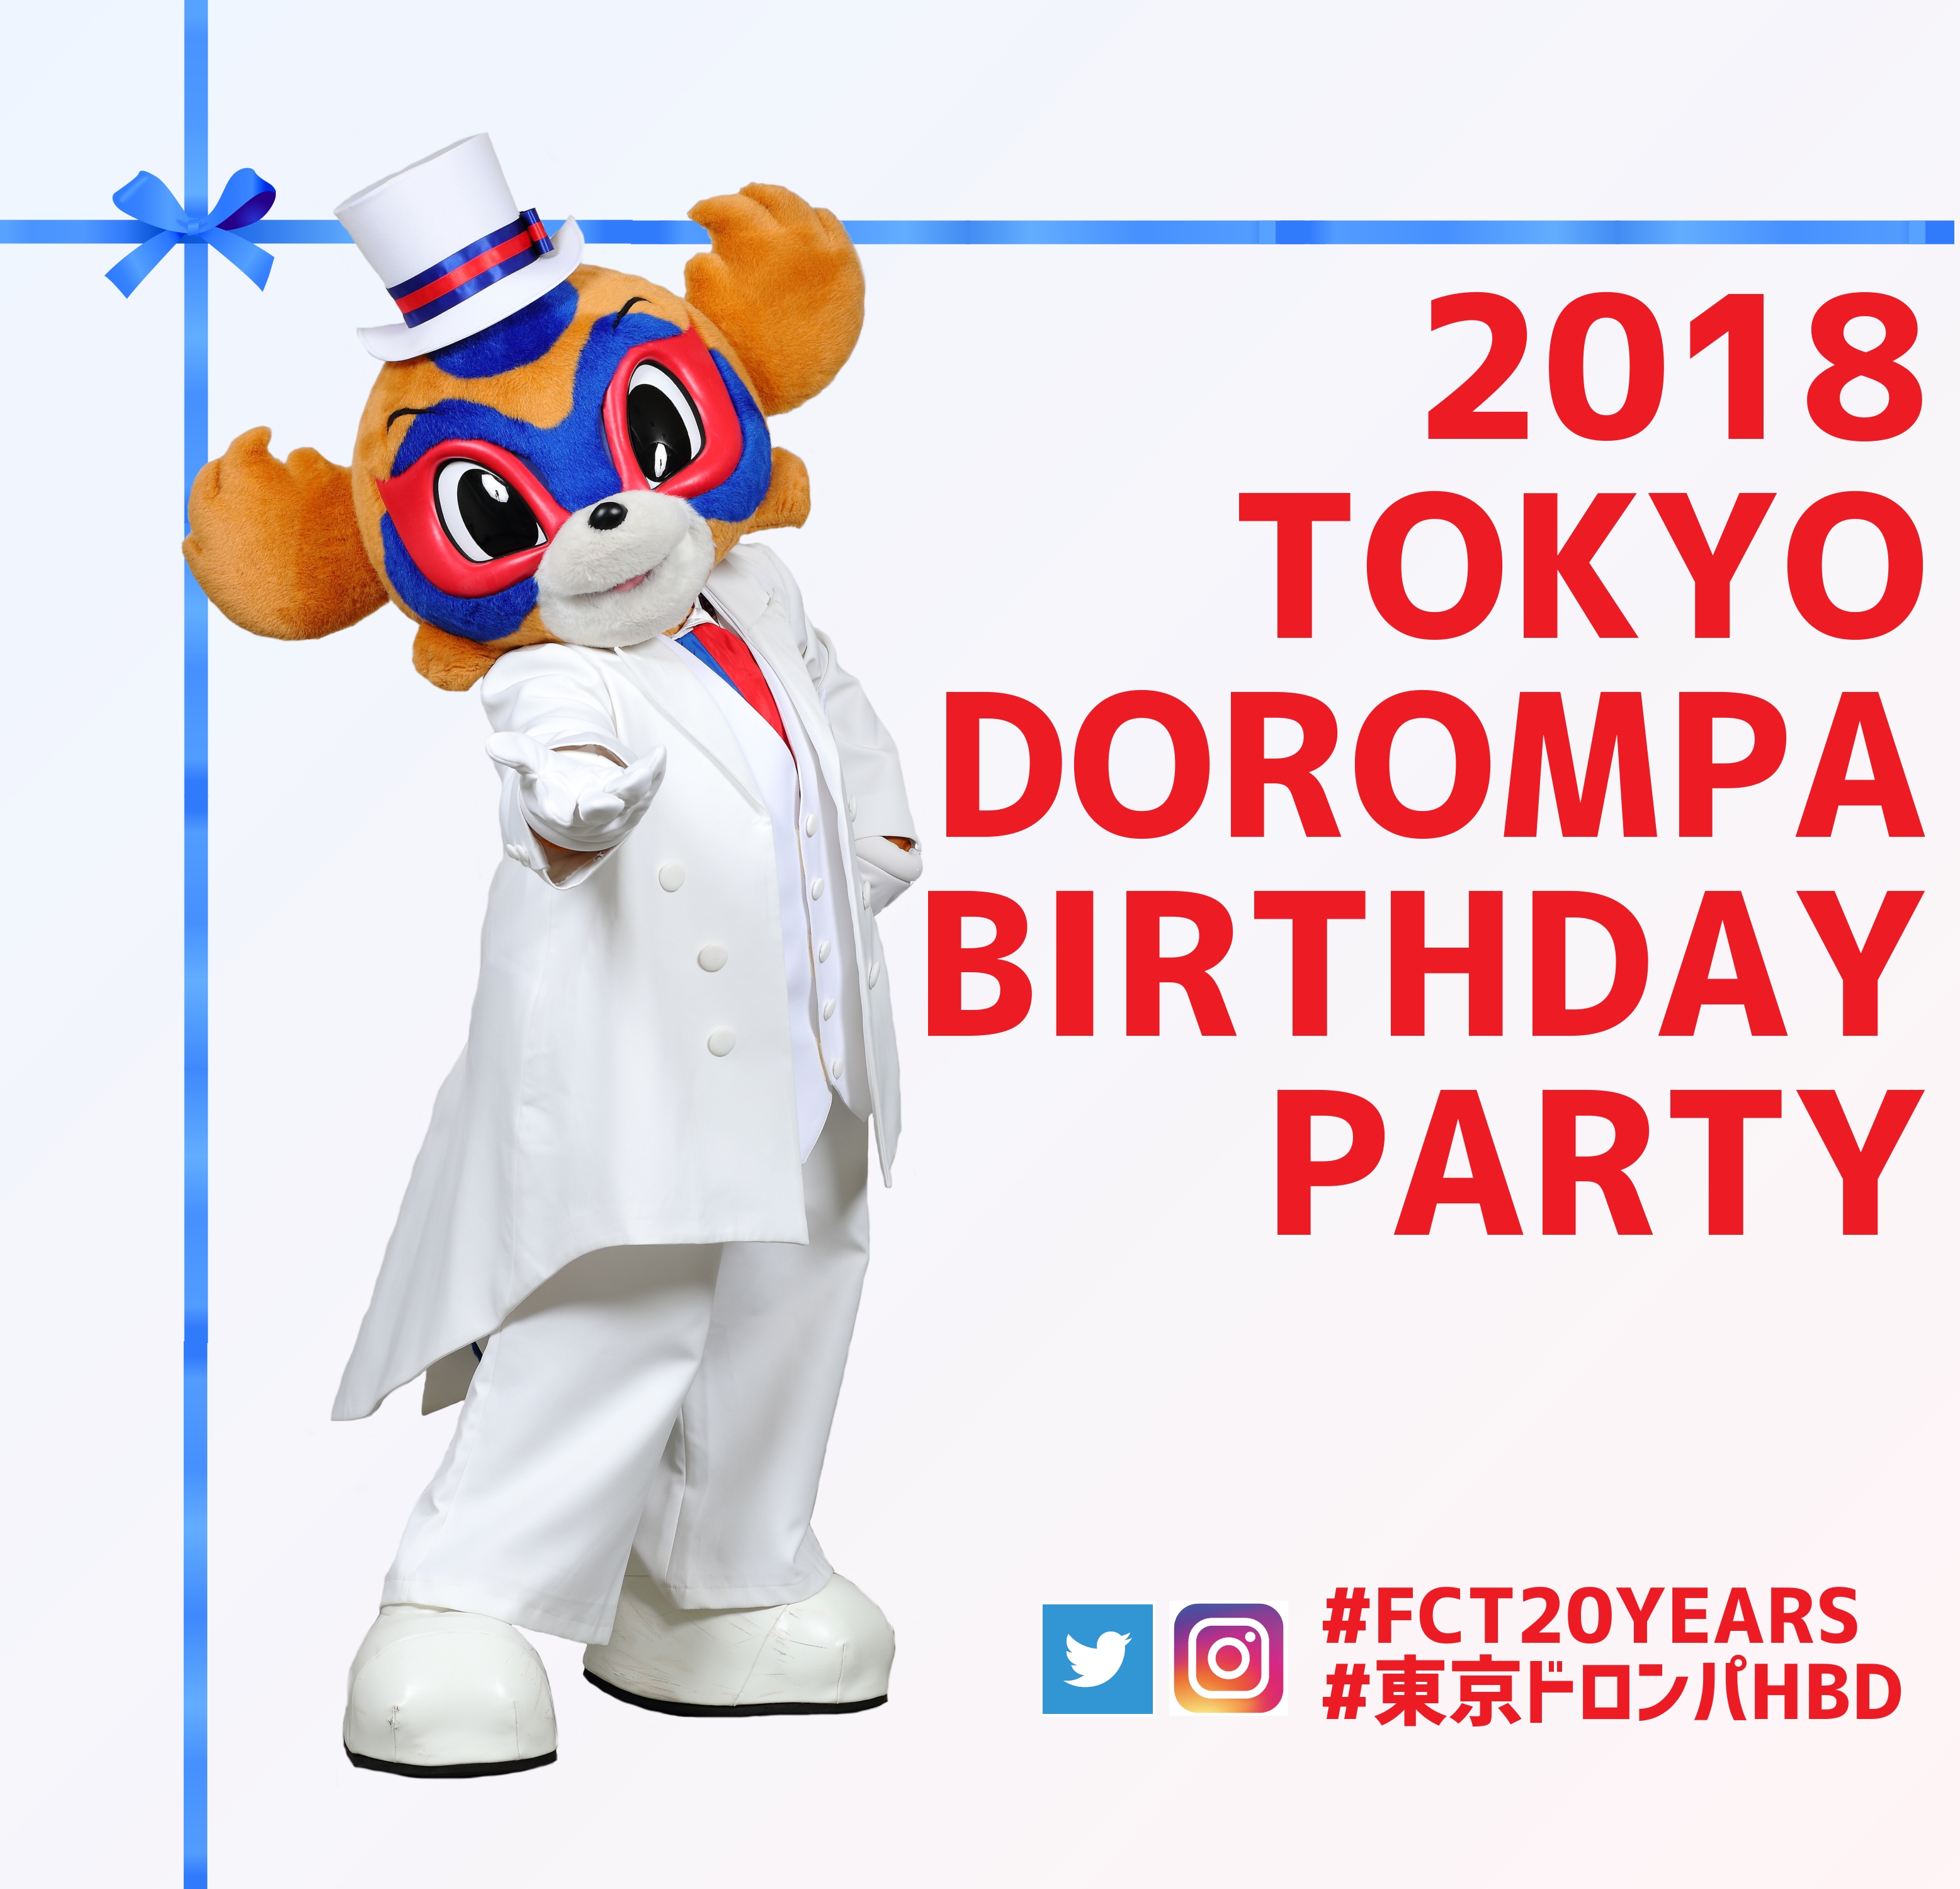 18 東京ドロンパ Birthday Party チームマスコット就任 10th Anniversary 開催 Fc東京のプレスリリース